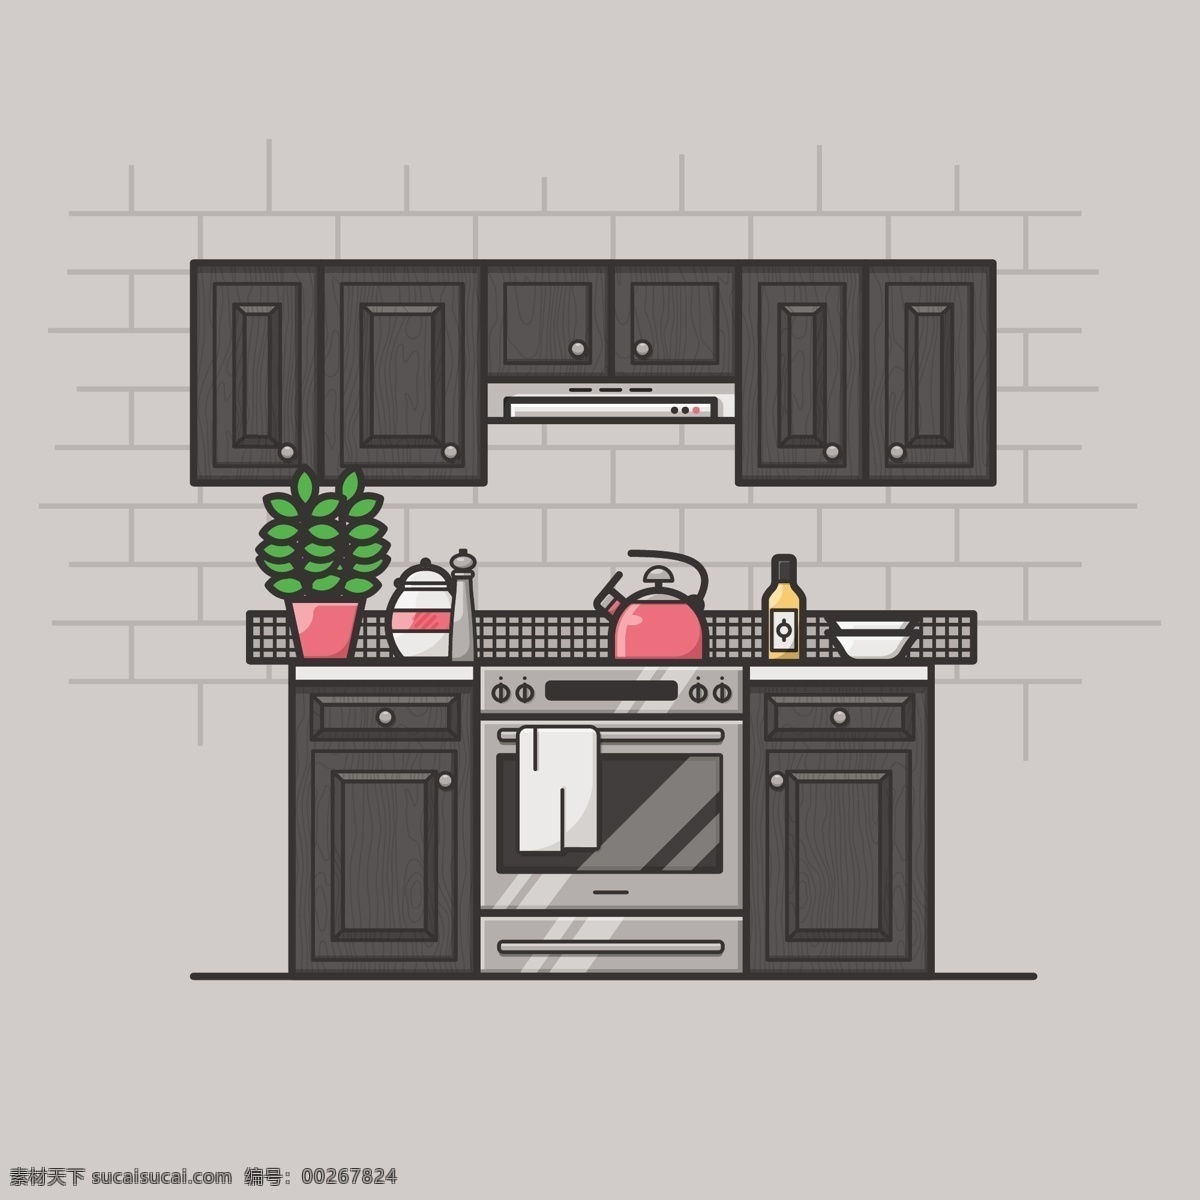 现代厨房 背景 食物 房子 卡通 厨房 家庭 桌子 艺术 家具 房间 素描 平面 烹饪 现代 室内 烤箱 电器 成套设备 火炉